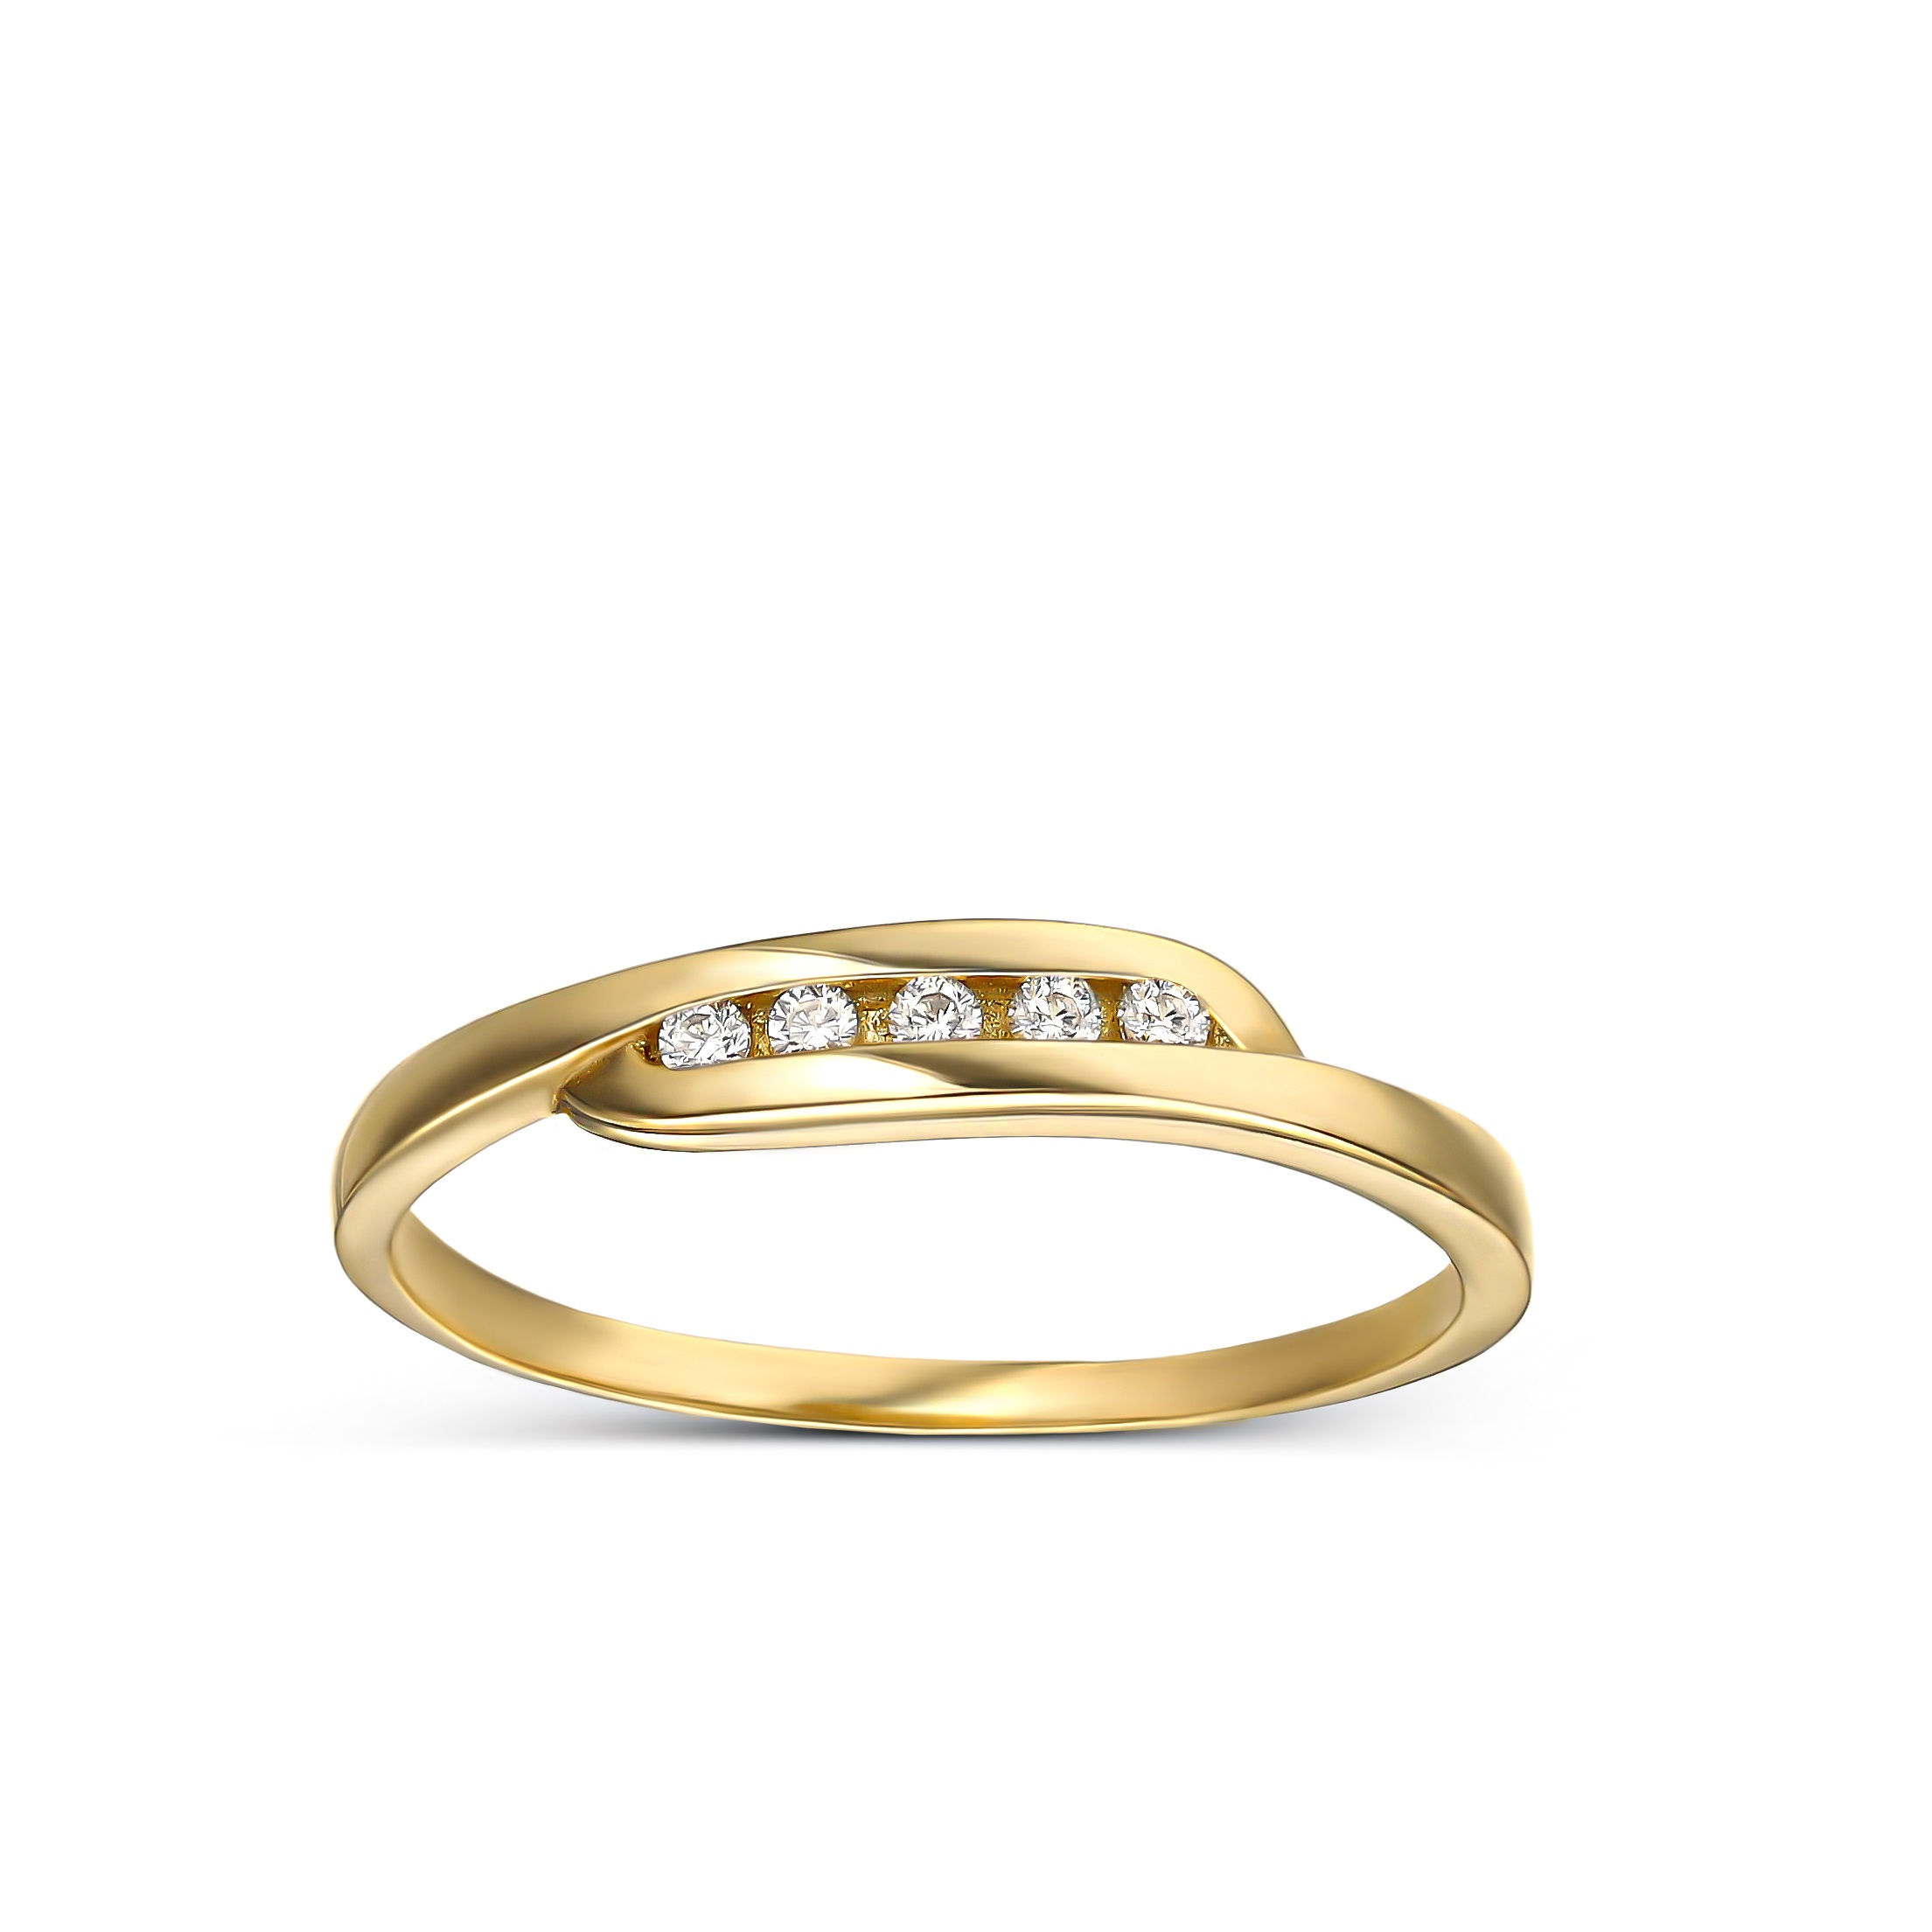 Delikatny pierścionek złoty z cyrkoniami, rozmiar 13, próba 585